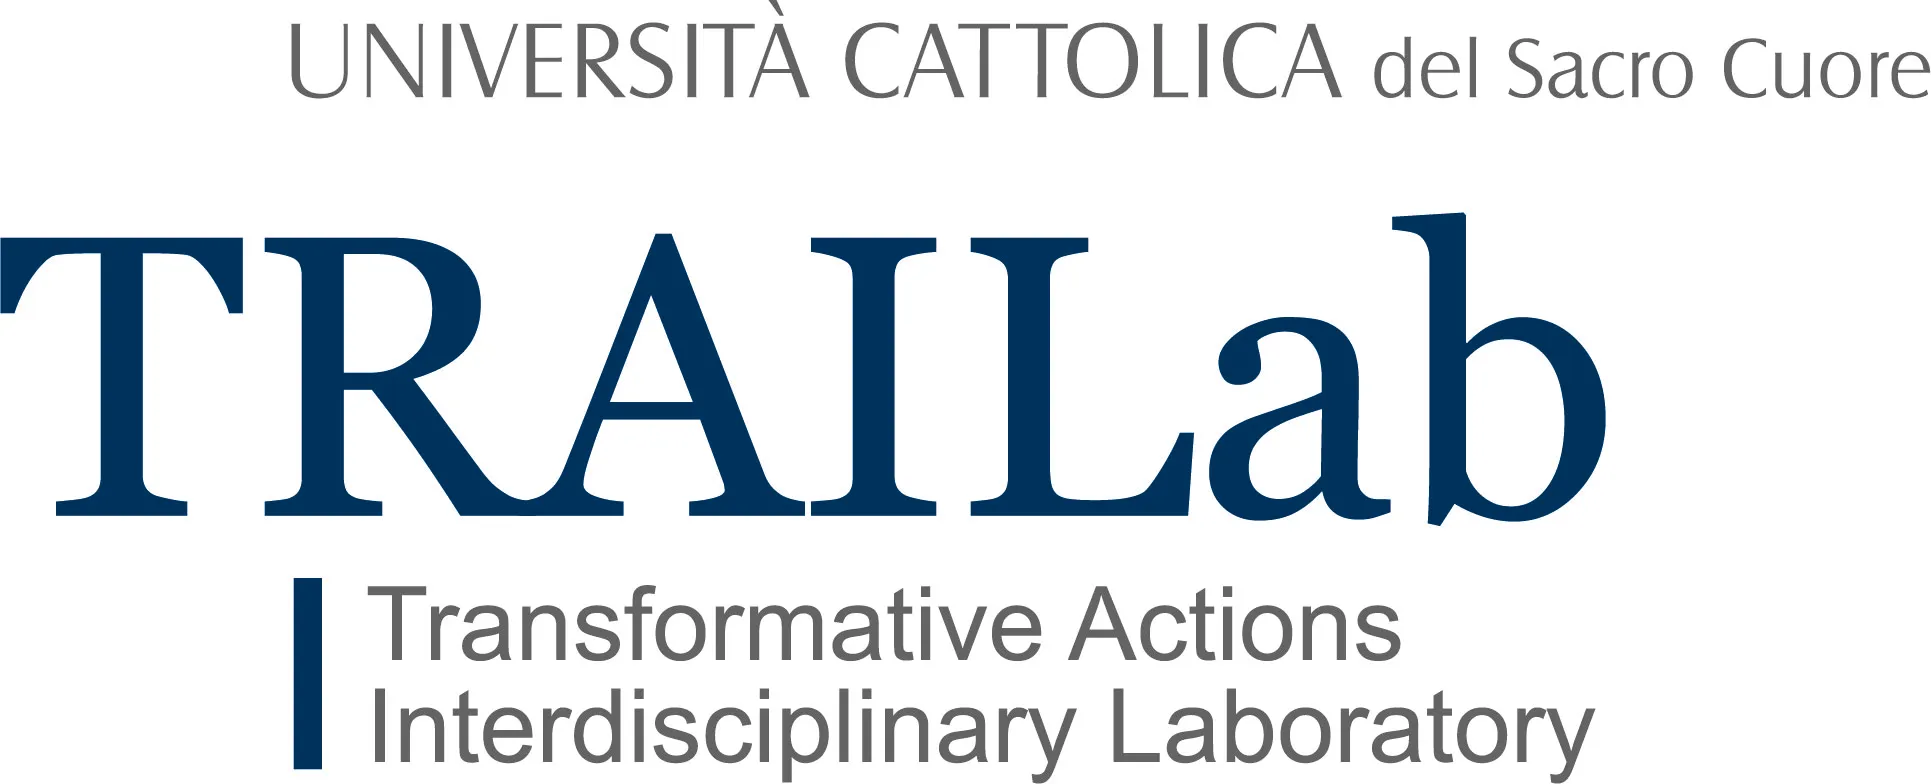 Università Cattolica del Sacro Cuore (UCSC) – Transformative Actions Interdisciplinary Laboratory (TRAILab)